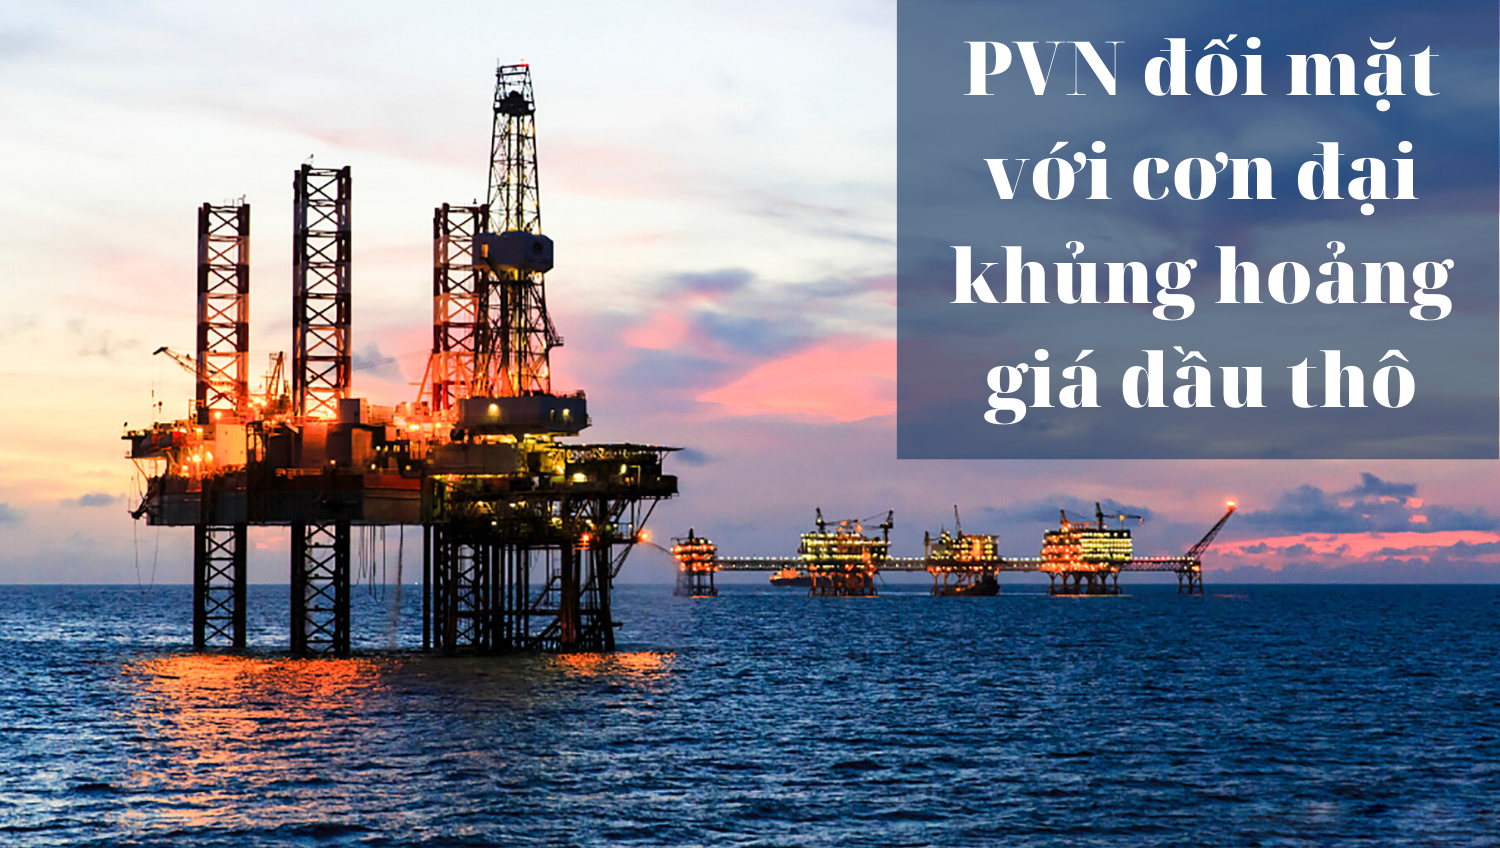 [E-Magazine] PVN đối mặt với cơn đại khủng hoảng giá dầu thô